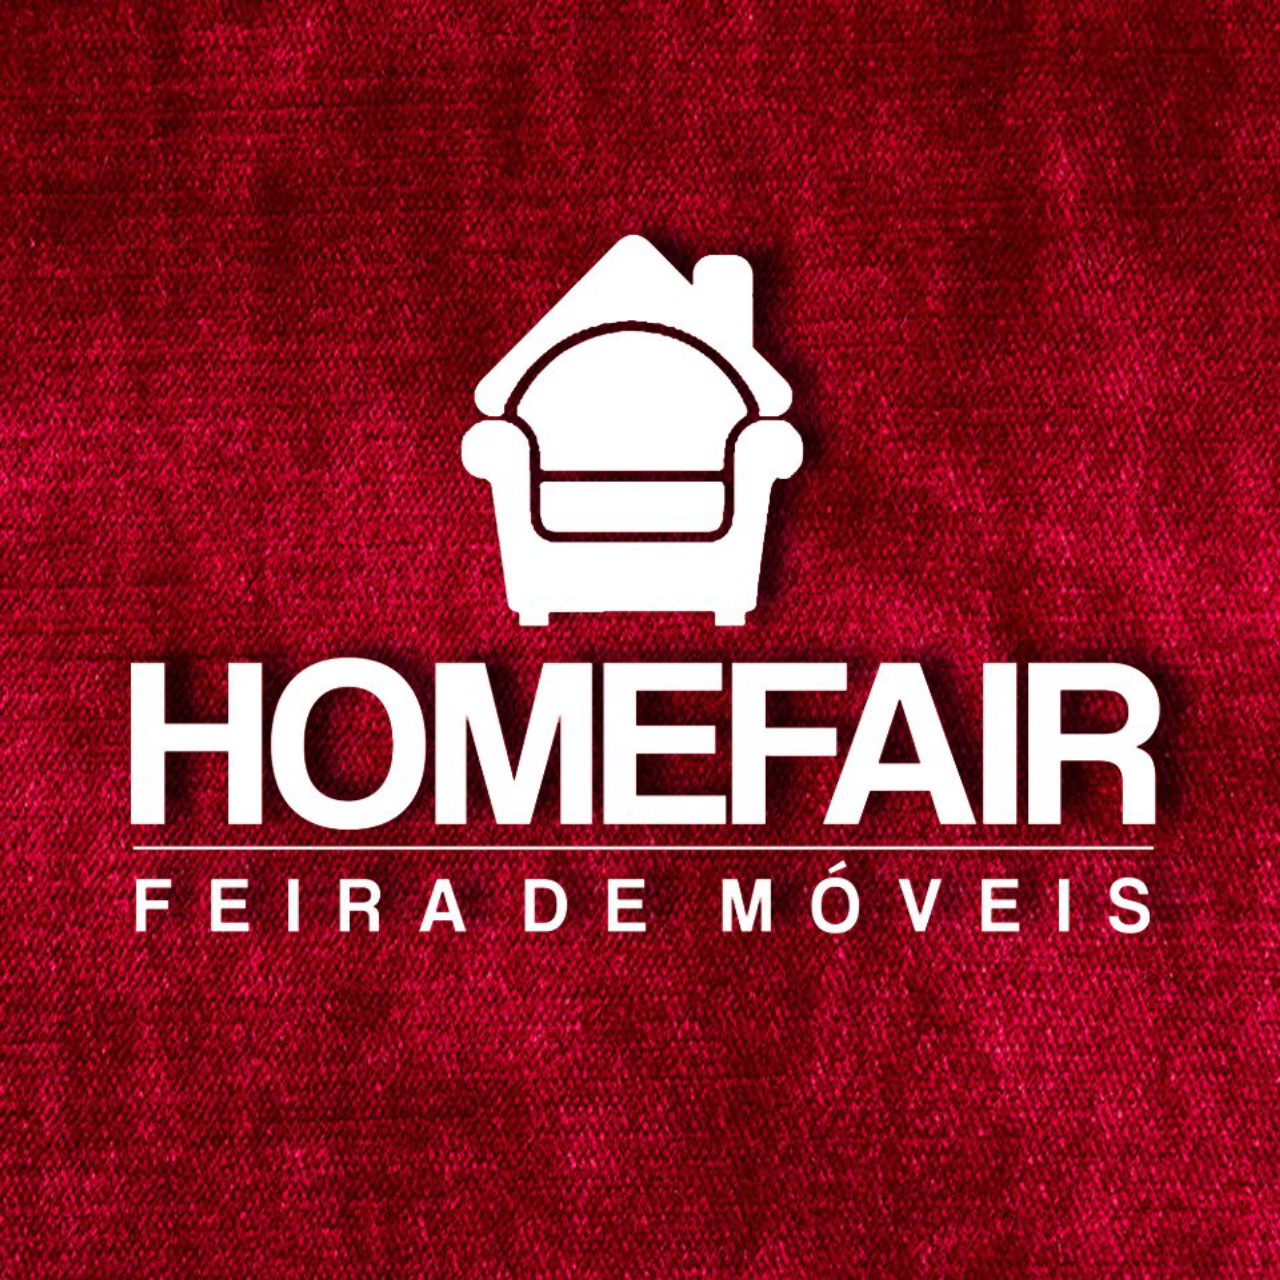 Home Fair, feira de móveis em Curitiba